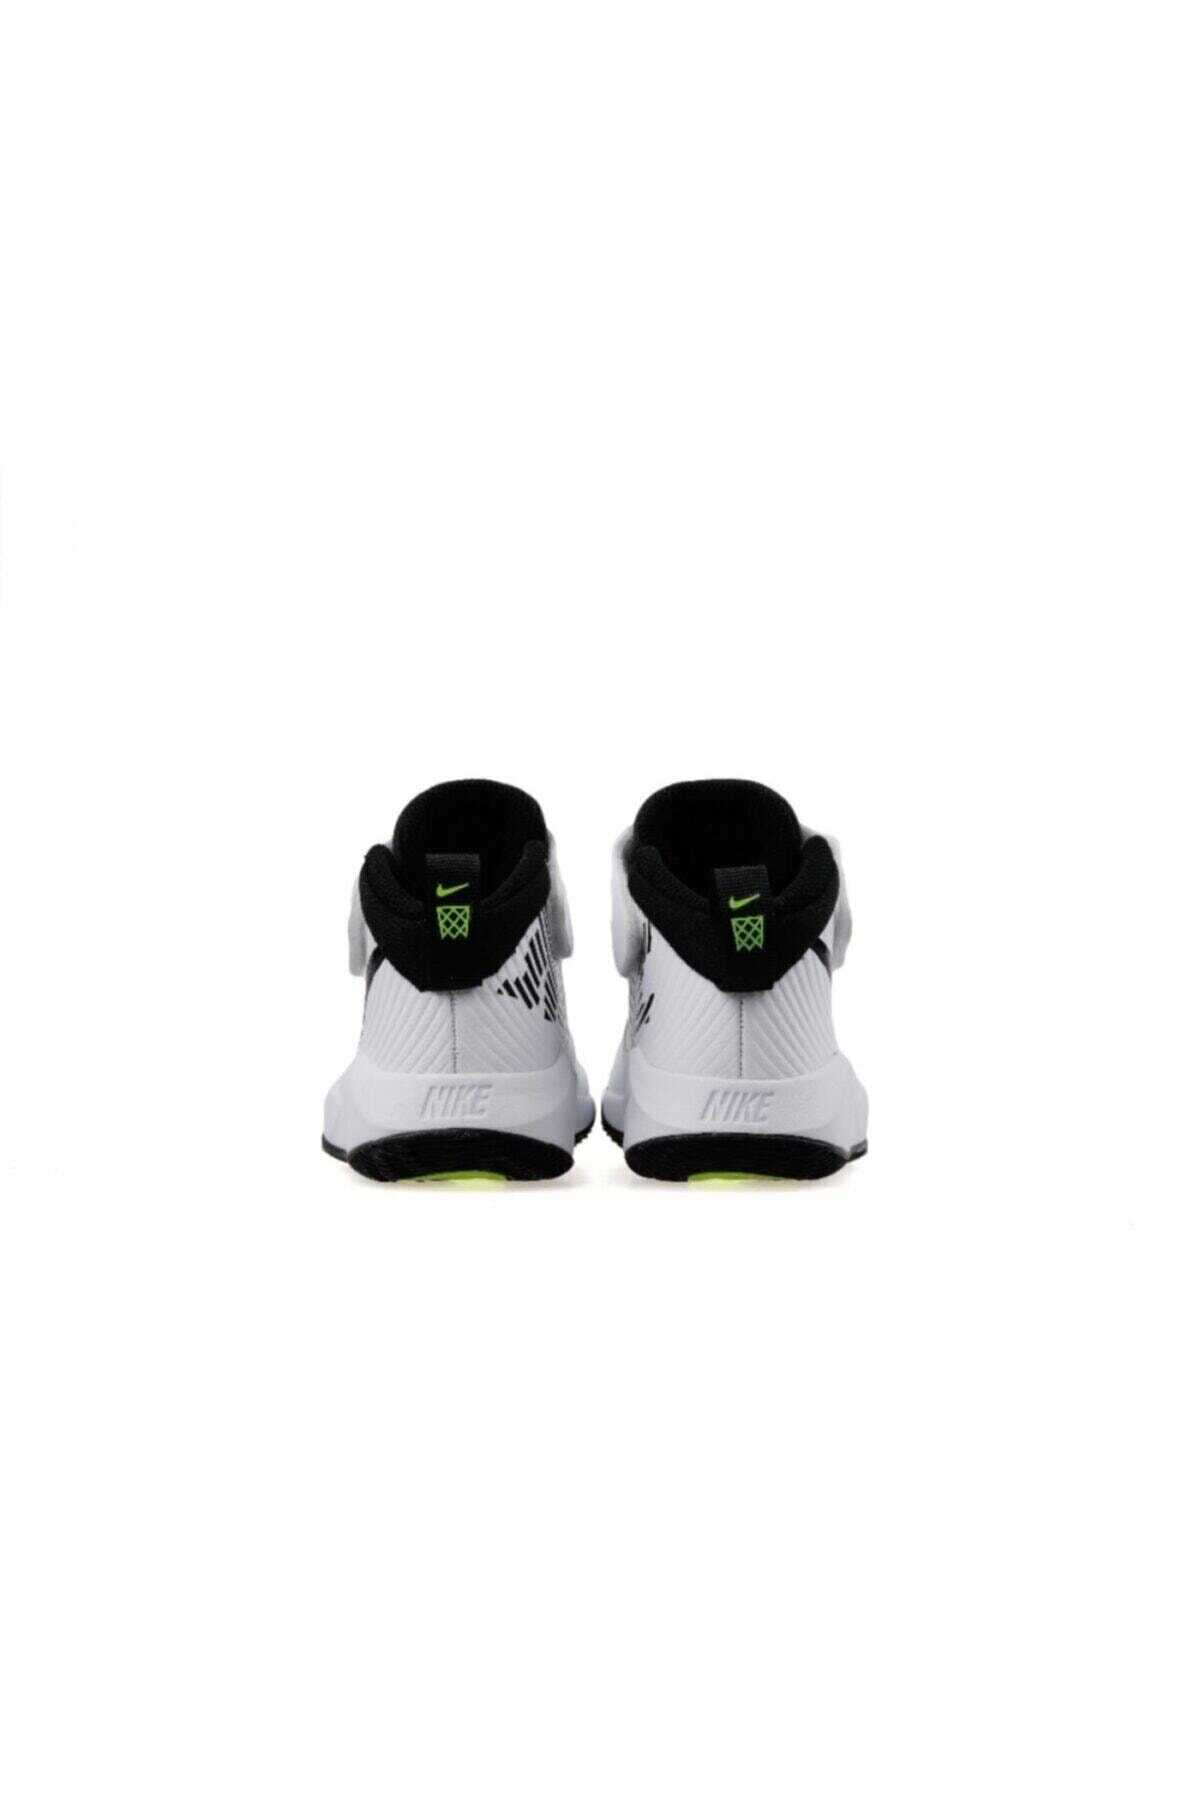 کفش بسکتبال بچه گانه یونیسکس سفید مدل Aq4225-100 برند Nike 